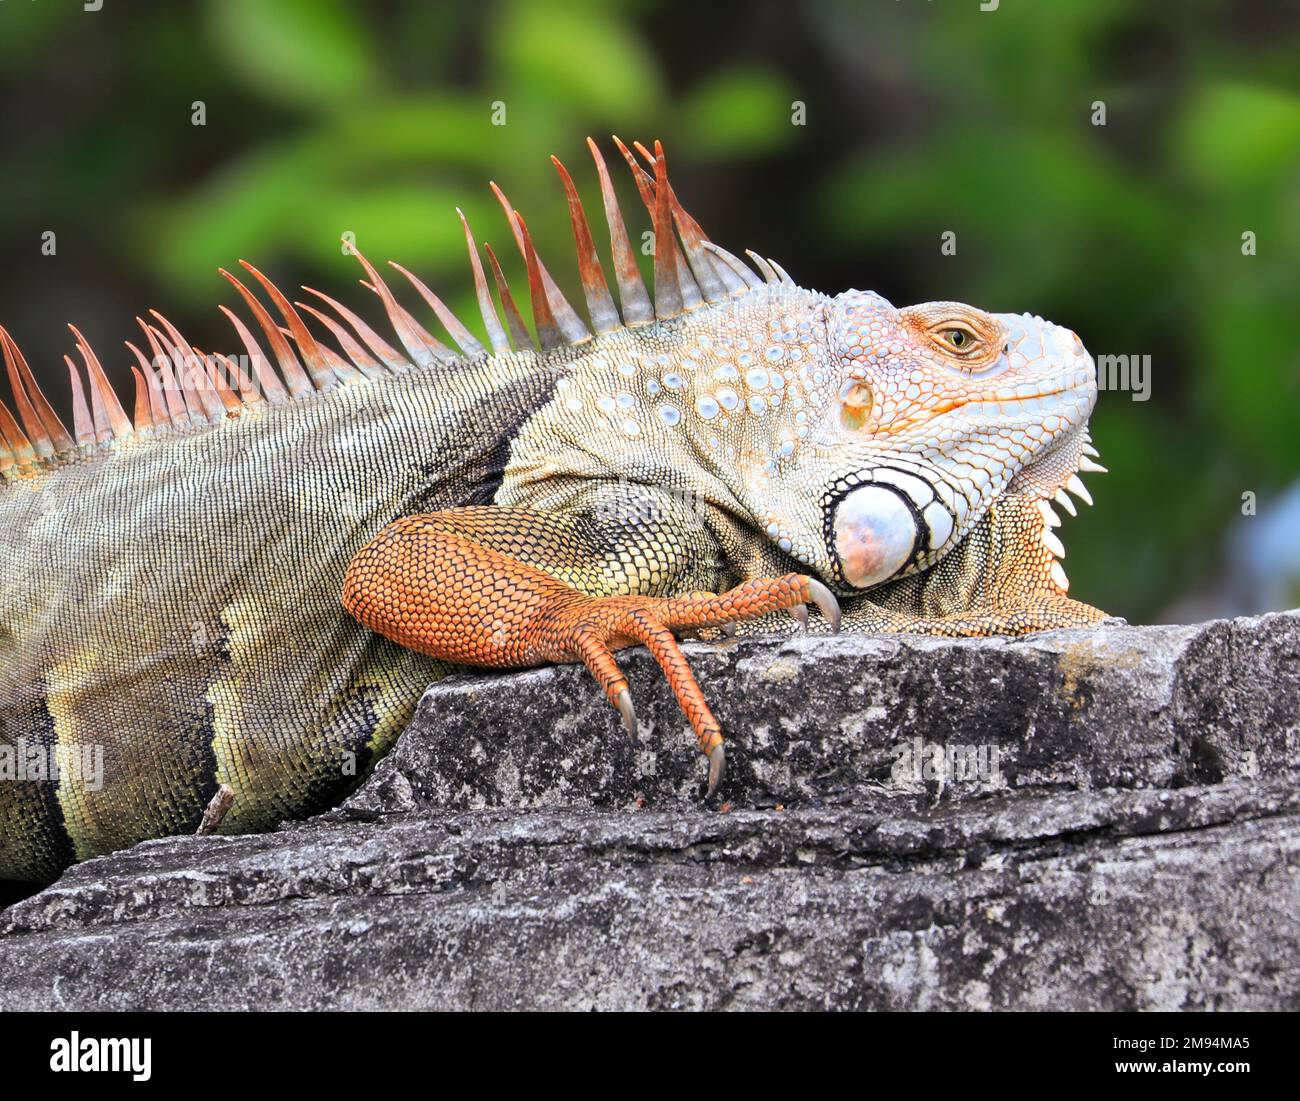 La iguana verde también conocida como la iguana americana es un reptil lagarto del género Iguana en la familia de las iguanas Foto de stock